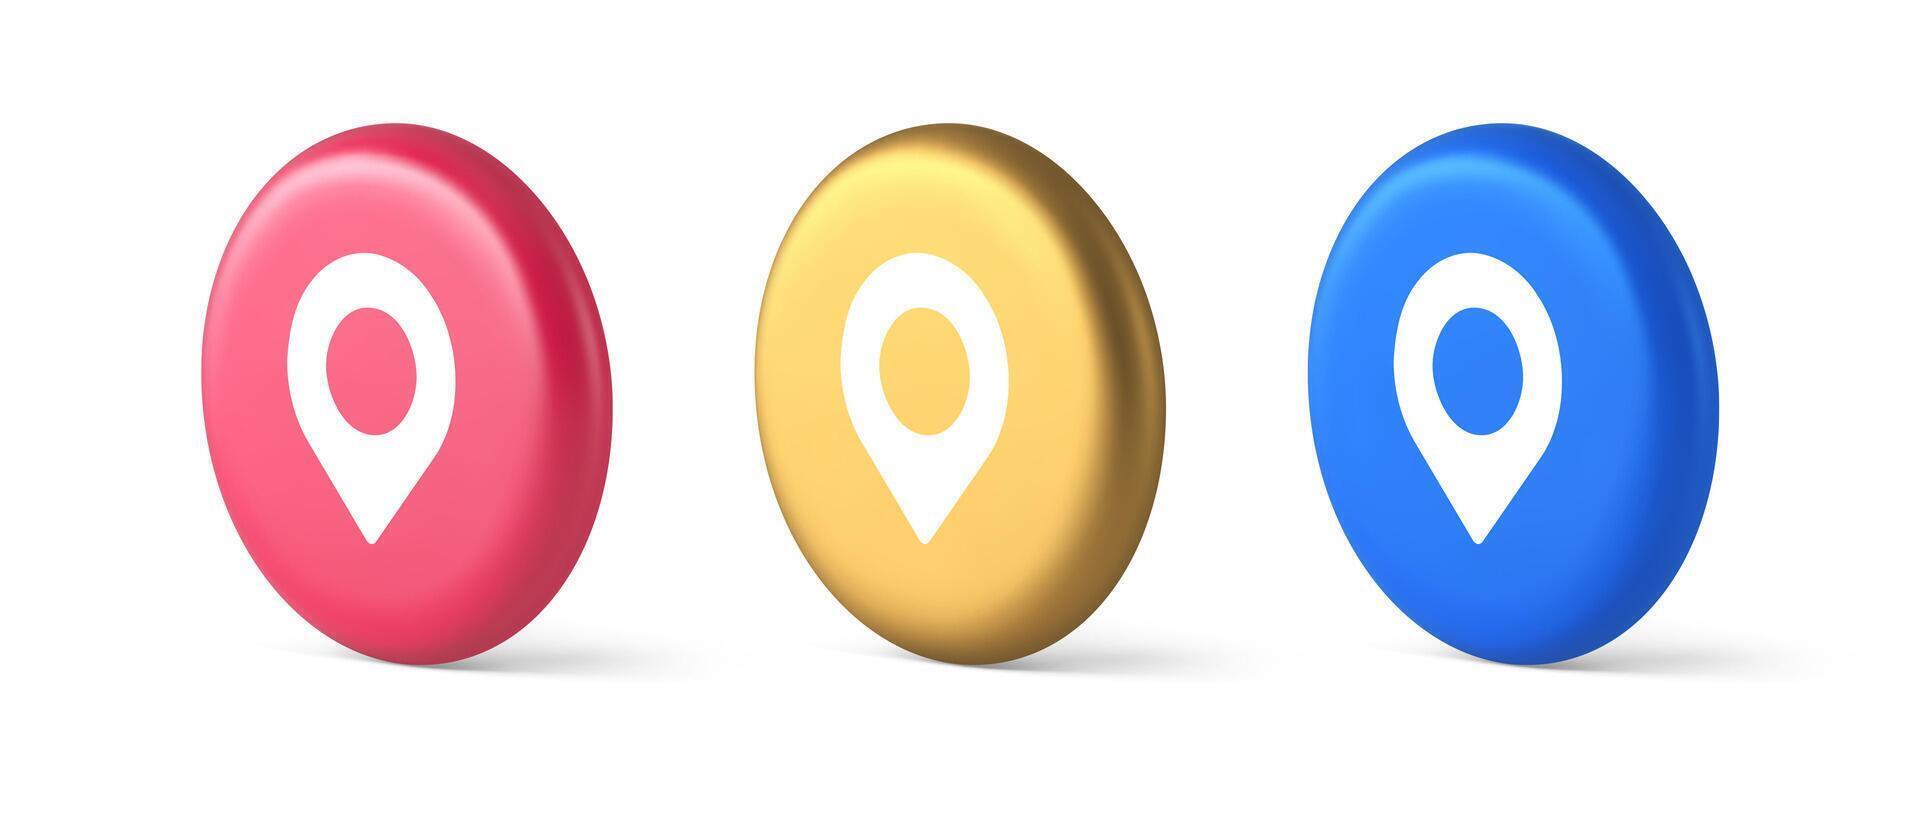 GPS mapa alfiler ubicación Servicio botón solicitud dirección distancia puntero 3d realista isométrica circulo icono vector